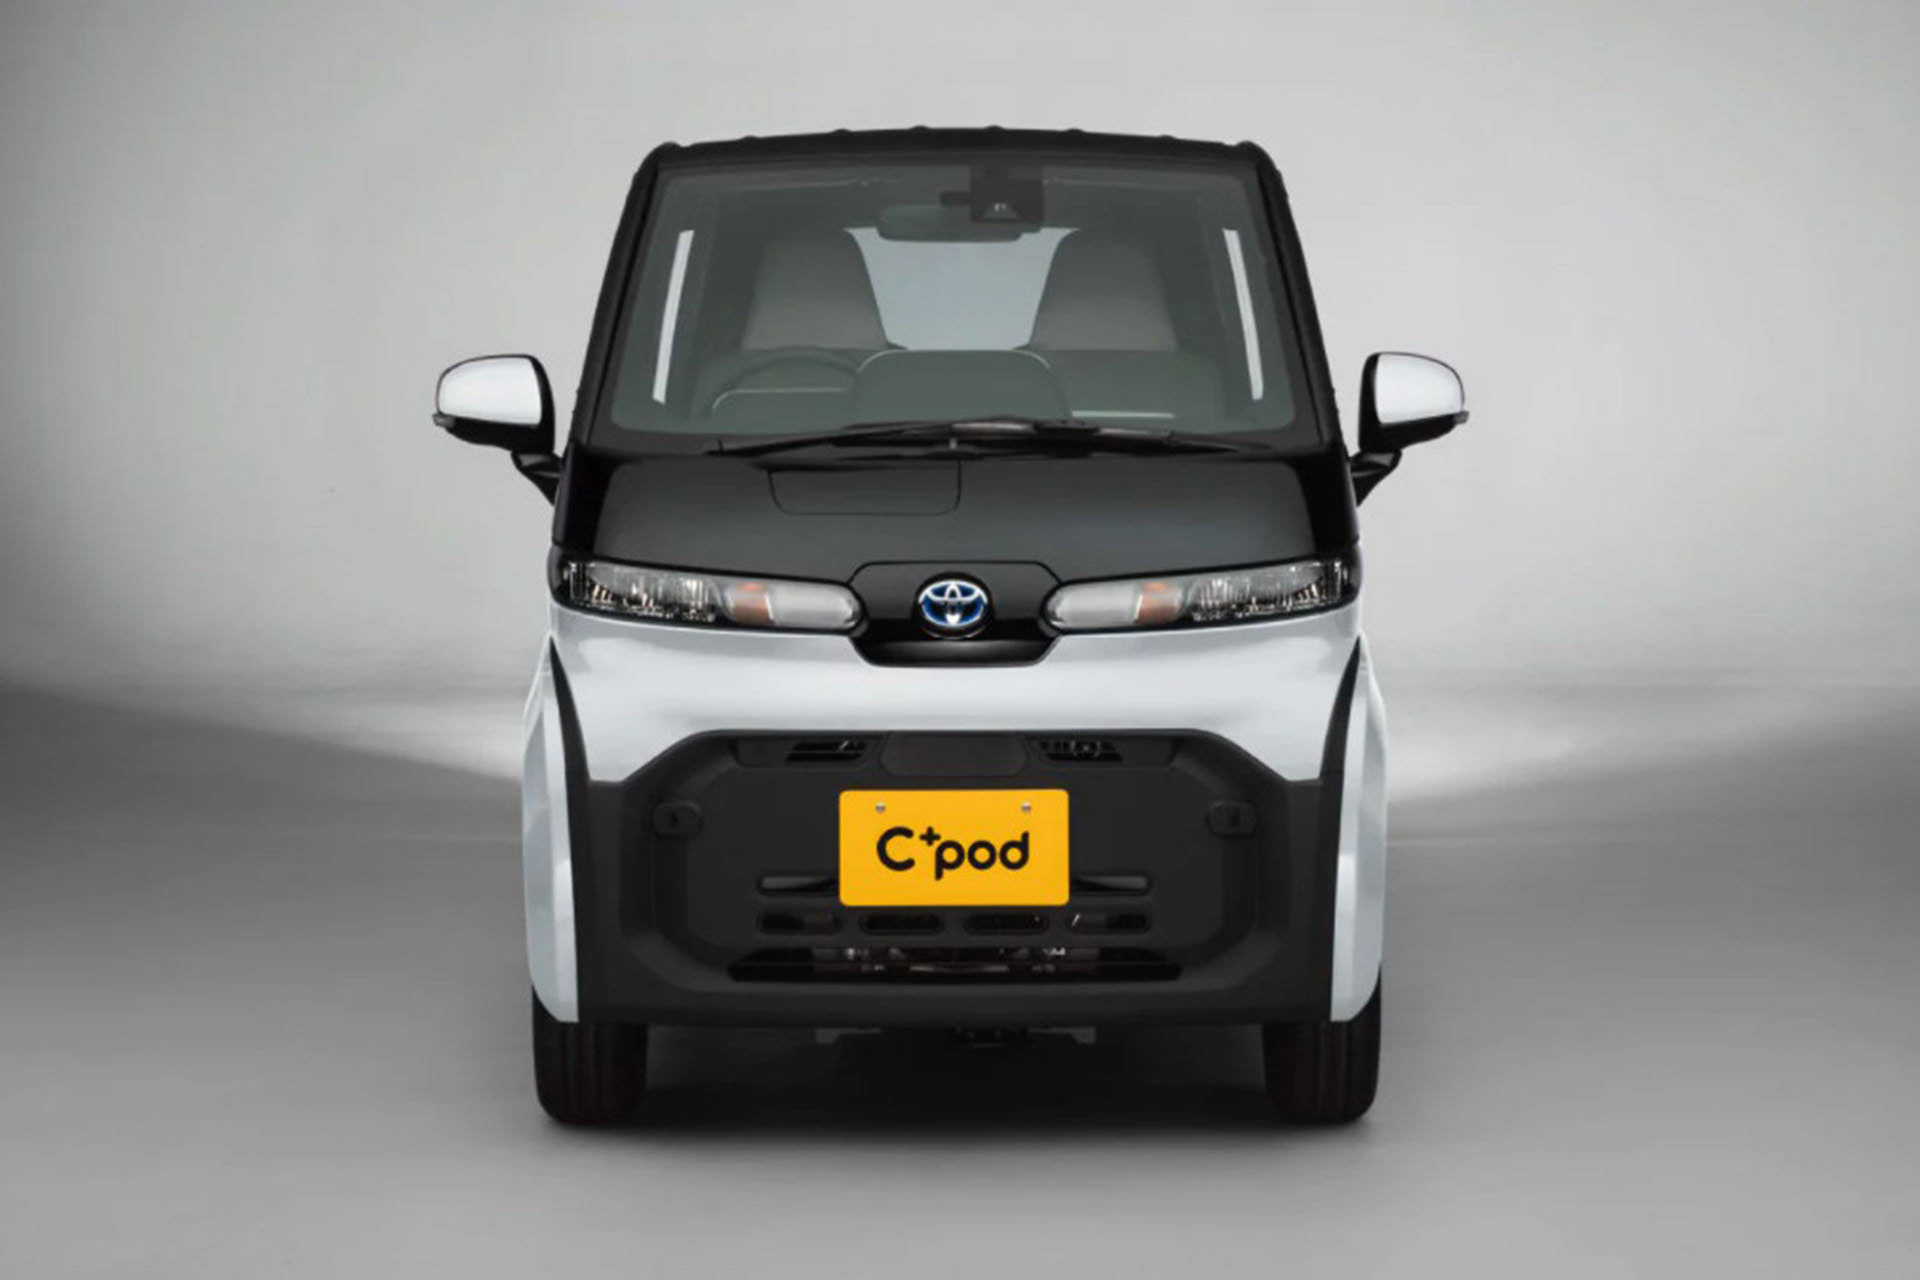 نمای جلو خودروی الکتریکی تویوتا سی پلاس پاد / Toyota C+pod Electric Car